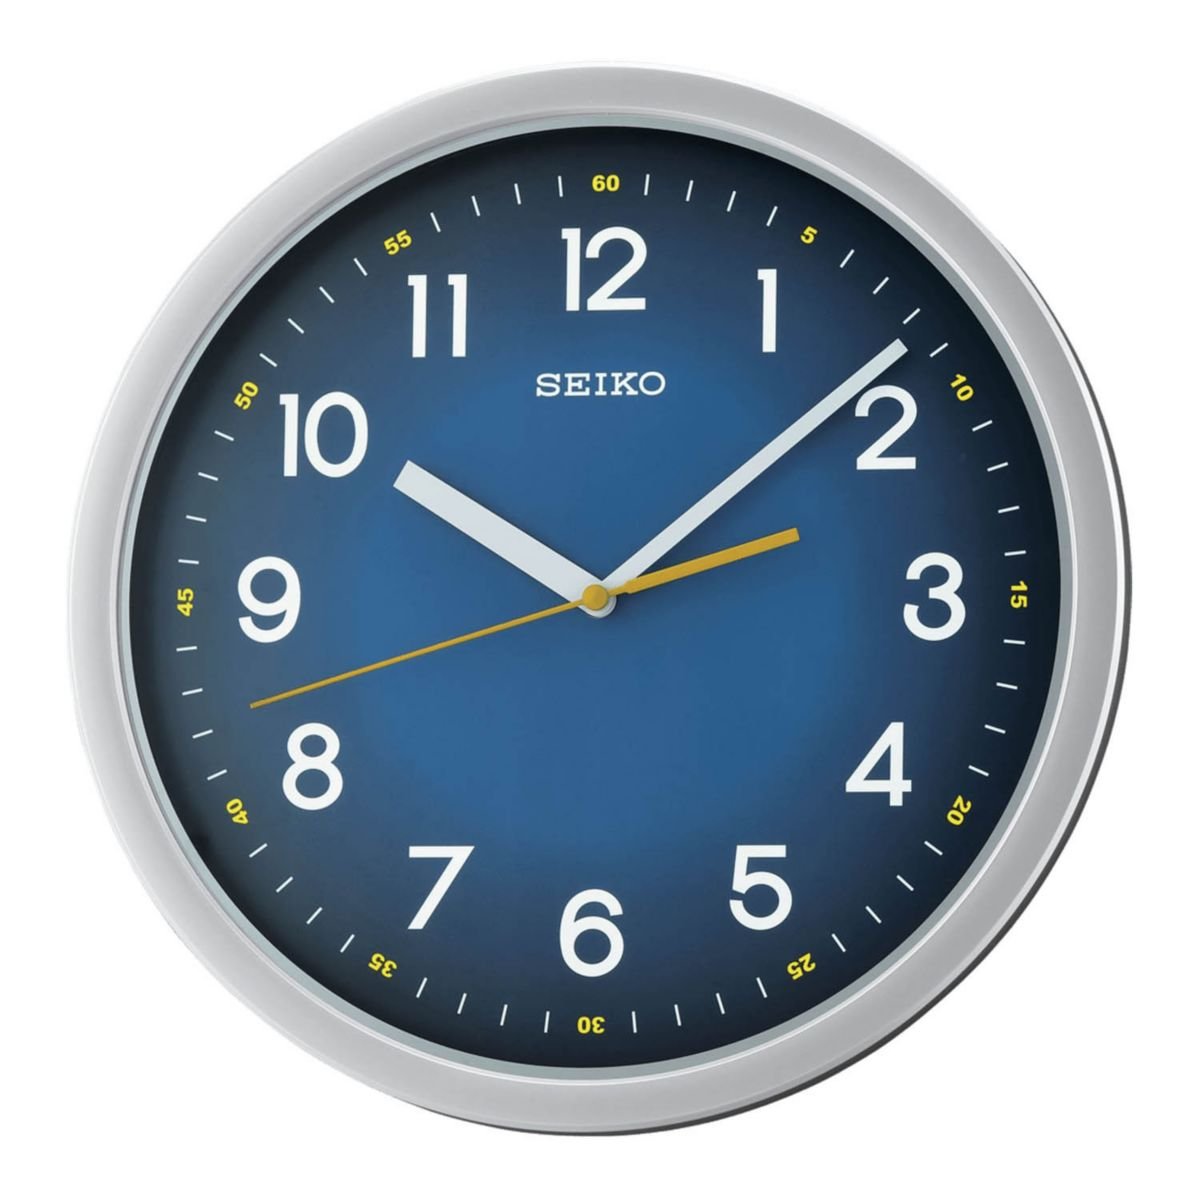 Часы 31 15. Настенные часы Seiko qxa590s. Настенные часы Seiko qxa528bn. Seiko Clock qxa472gt. Seiko Clock qxa706kn.